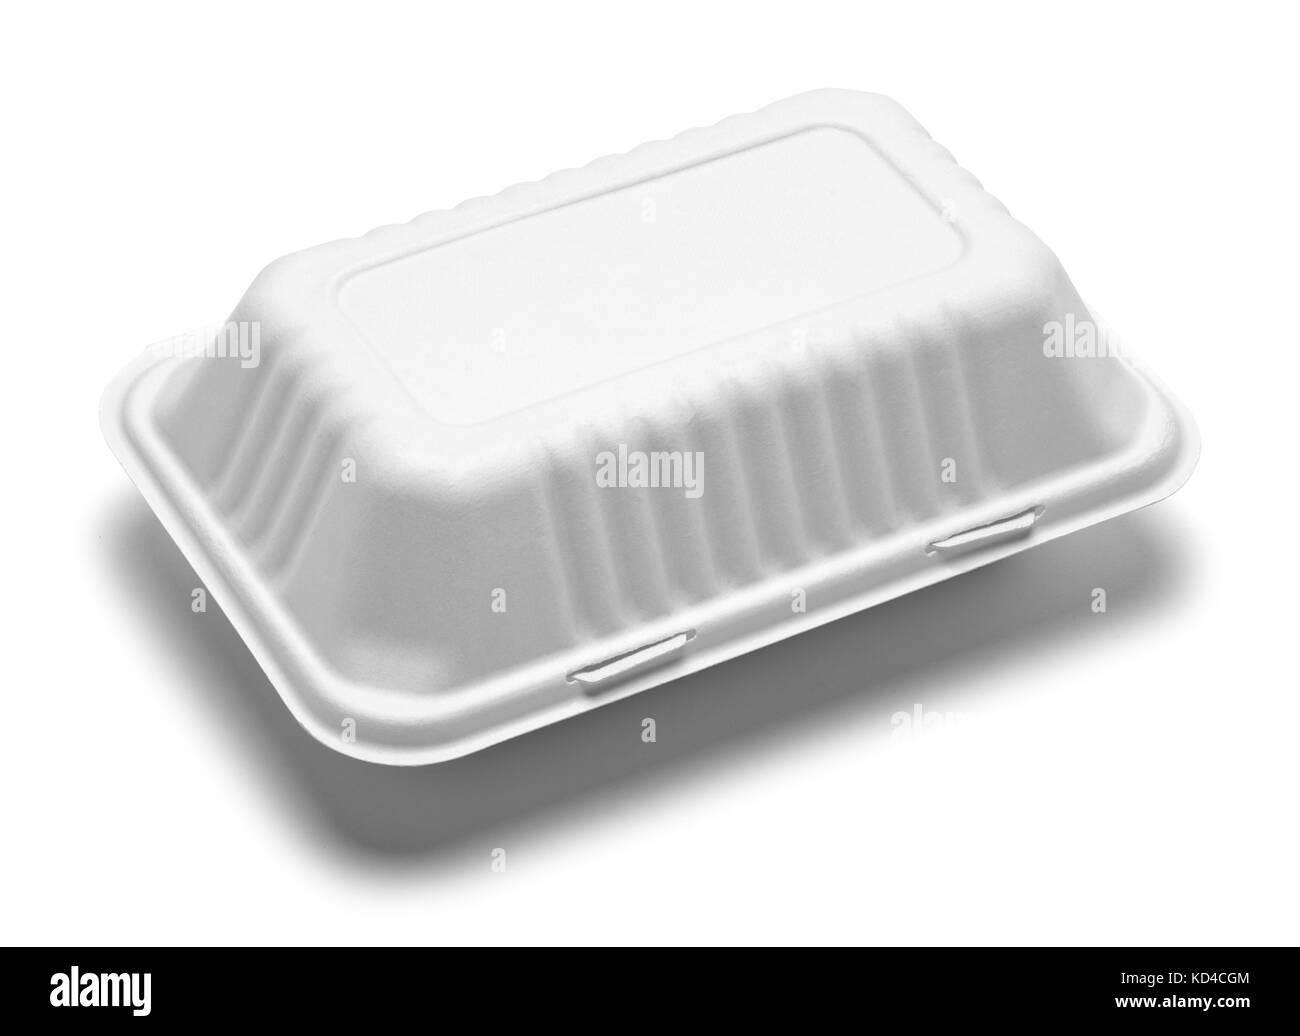 Saque carboard blanco caja de alimentos aislado sobre un fondo blanco. Foto de stock